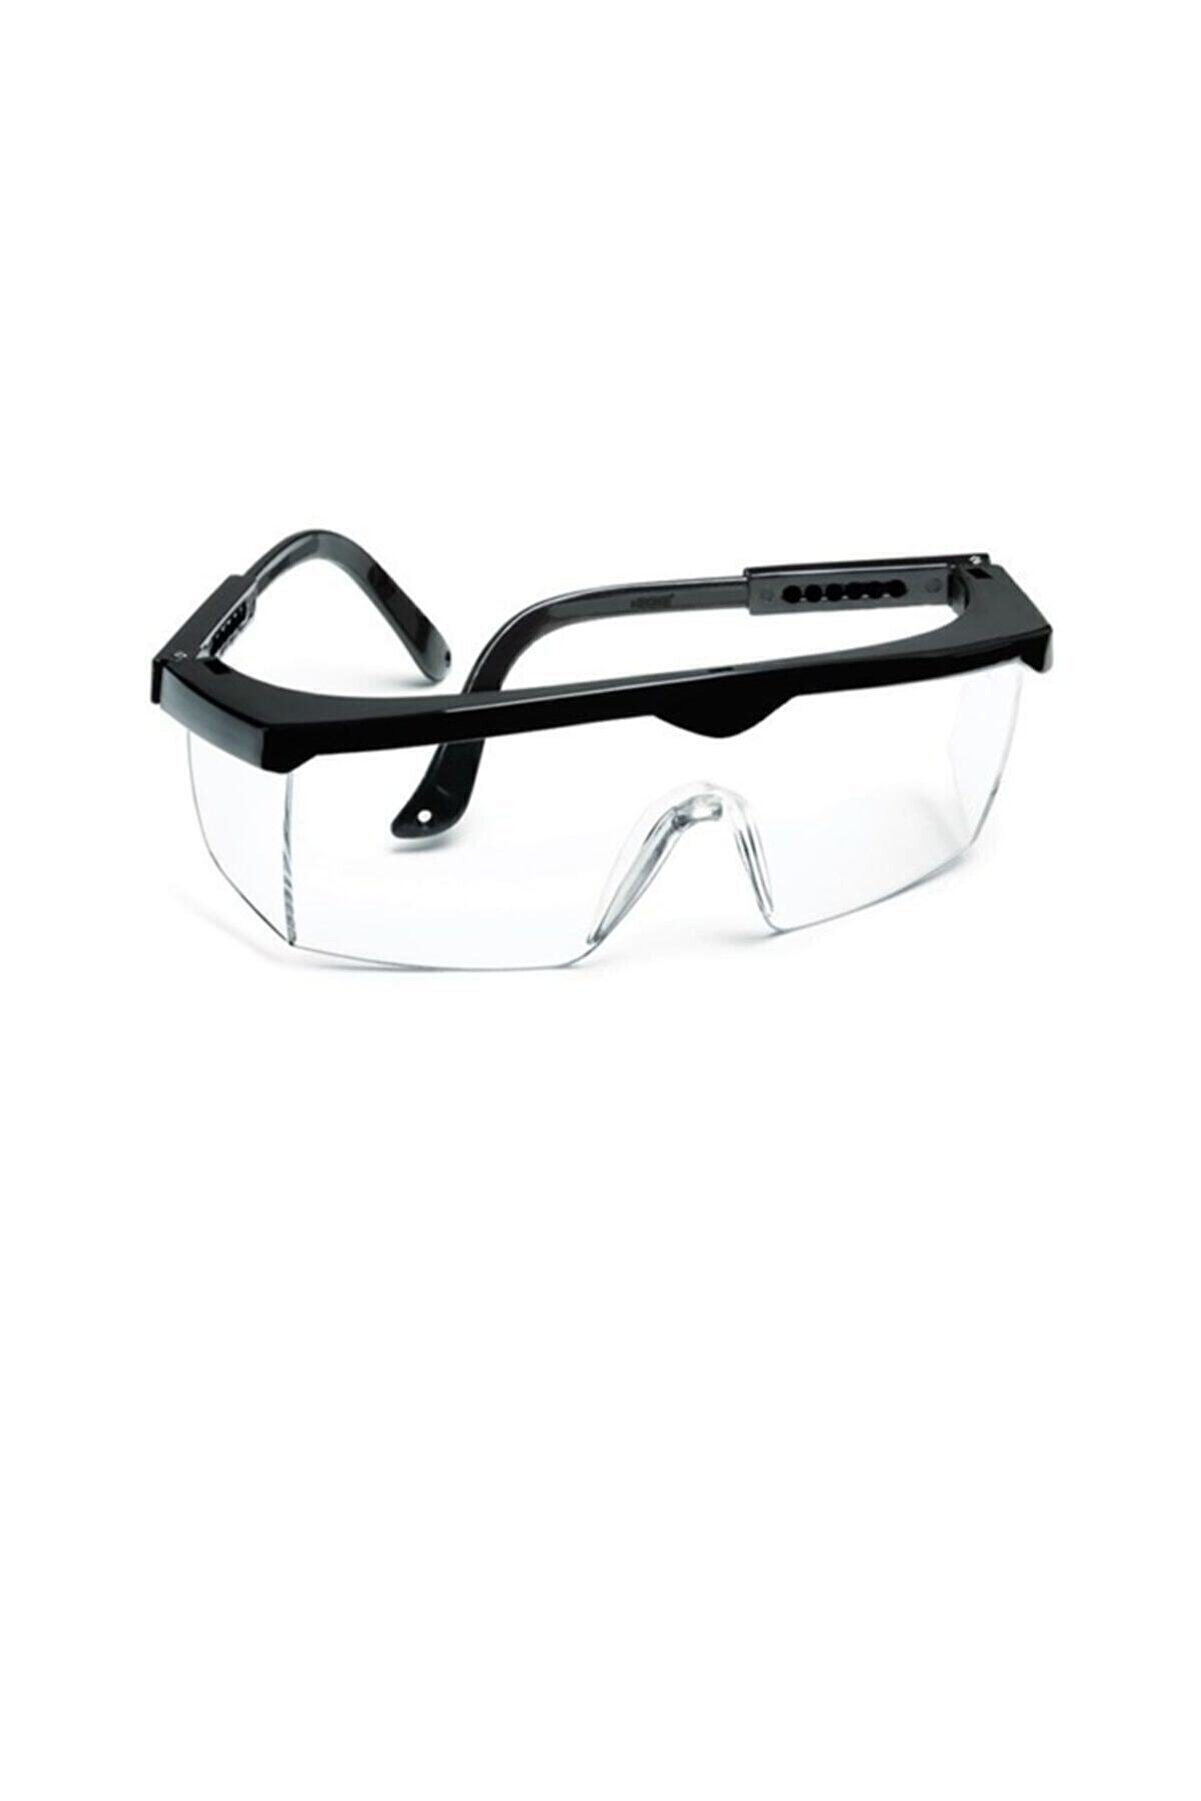 Eltos Ayarlı Çapak Gözlüğü Şeffaf Ce Koruyucu Gözlük